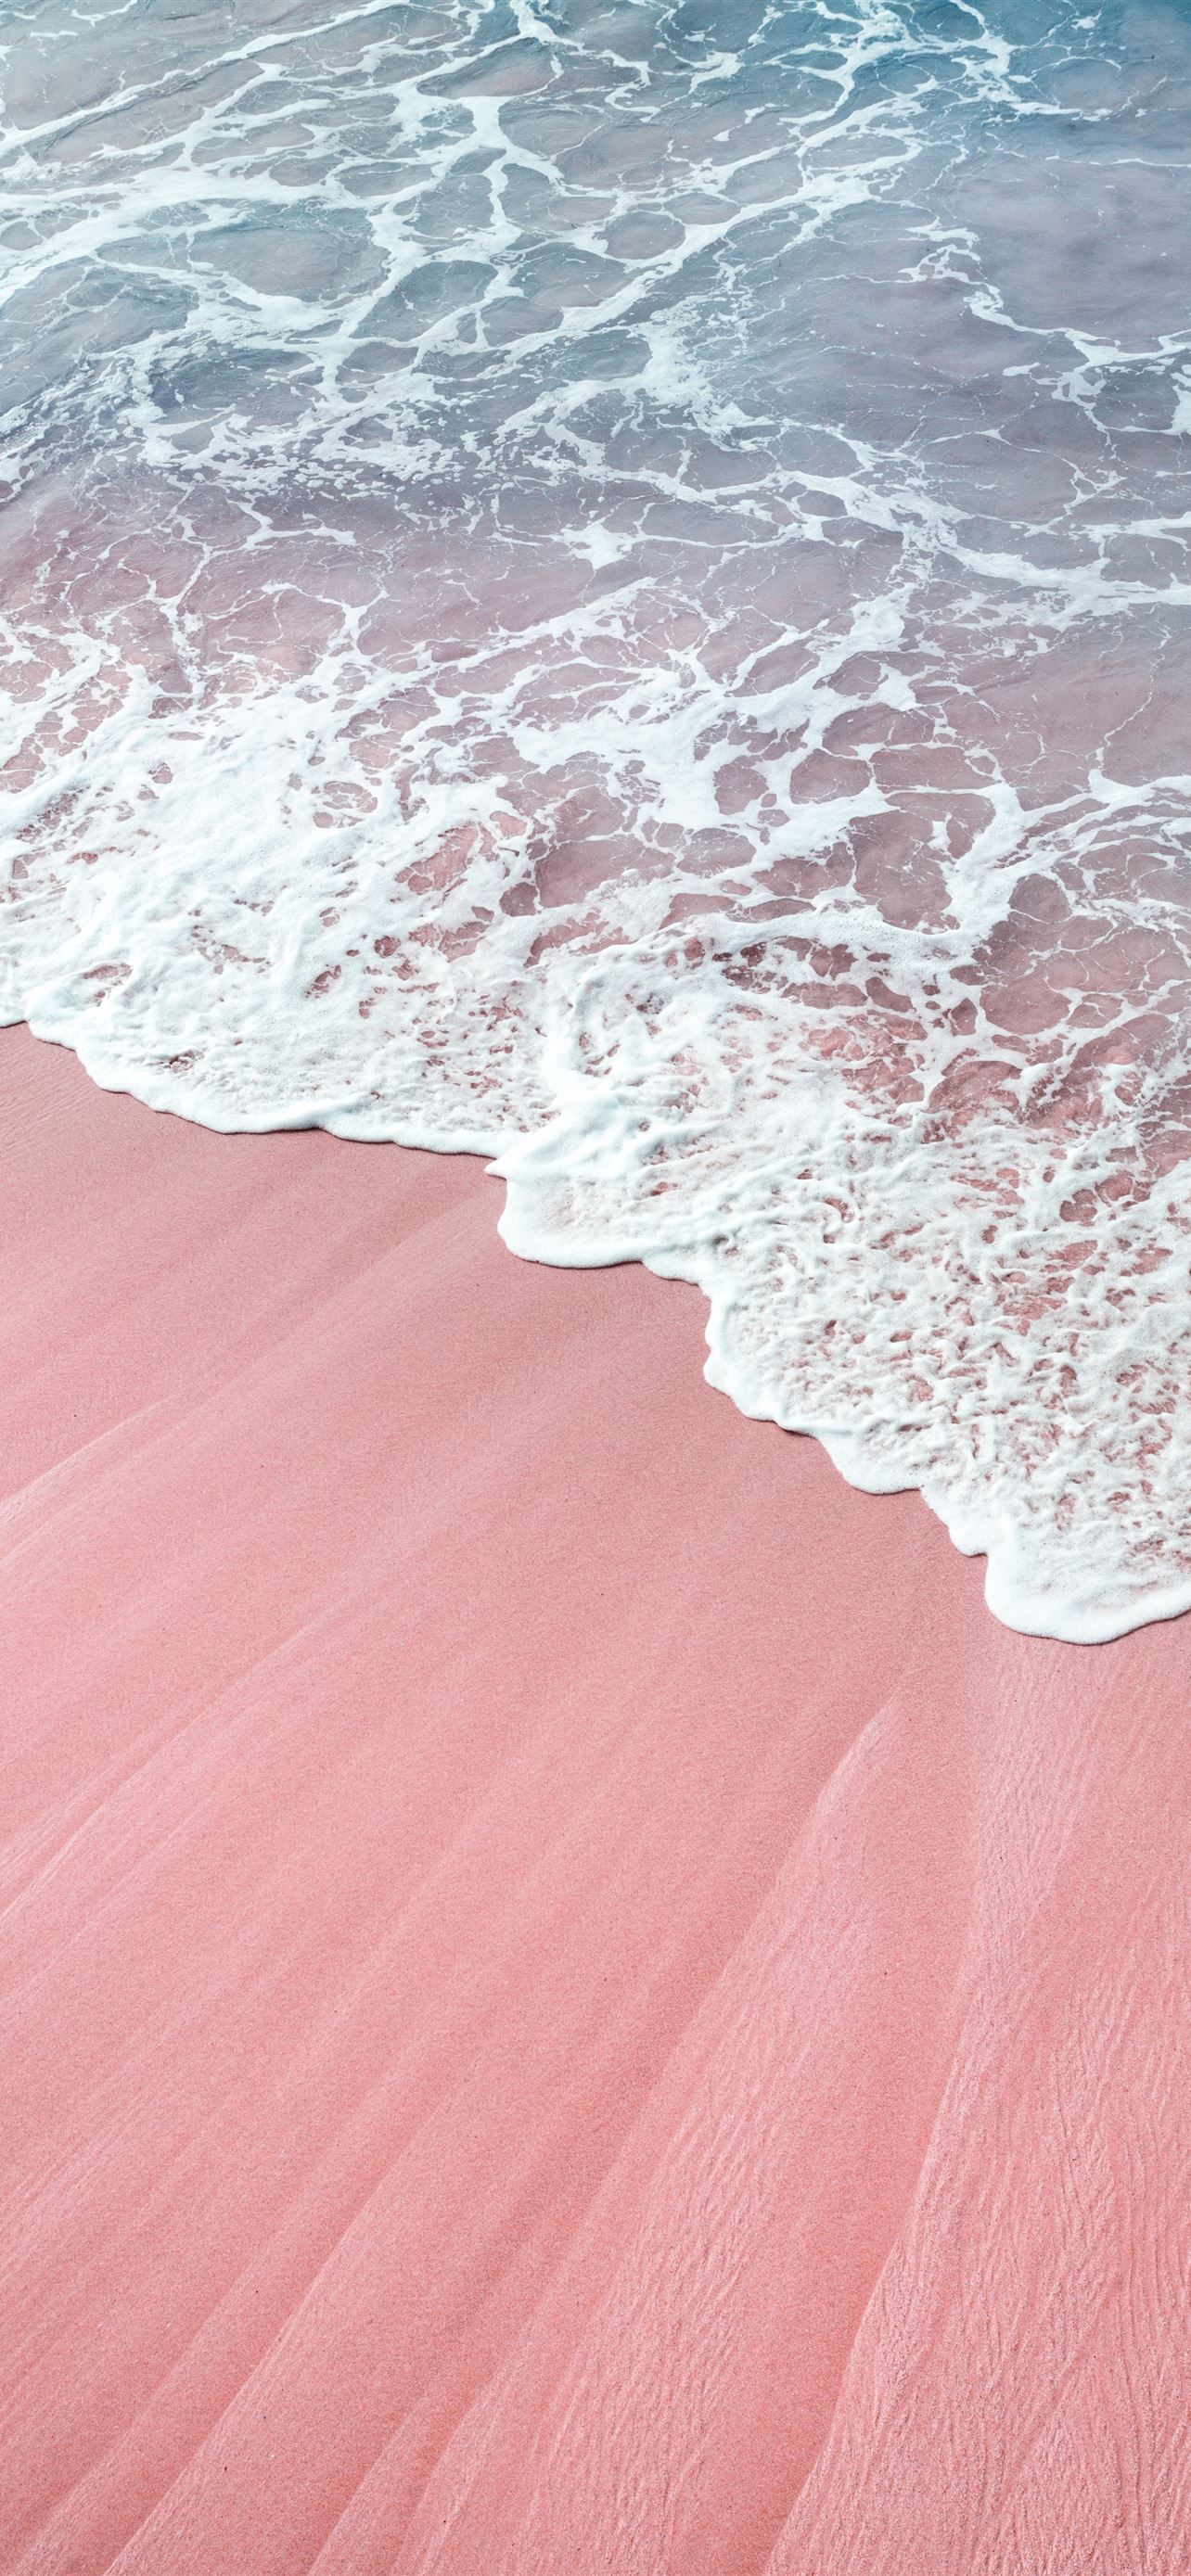 Màn hình điện thoại của bạn sẽ thật ấn tượng với hình nền sóng hồng rực rỡ. Tuyệt đẹp và tươi sáng, hình nền sóng hồng sẽ là điều khoáng đạt cho người xem. Thưởng thức những hình nền sóng hồng cho iPhone để đem lại trải nghiệm tuyệt vời cho bạn.